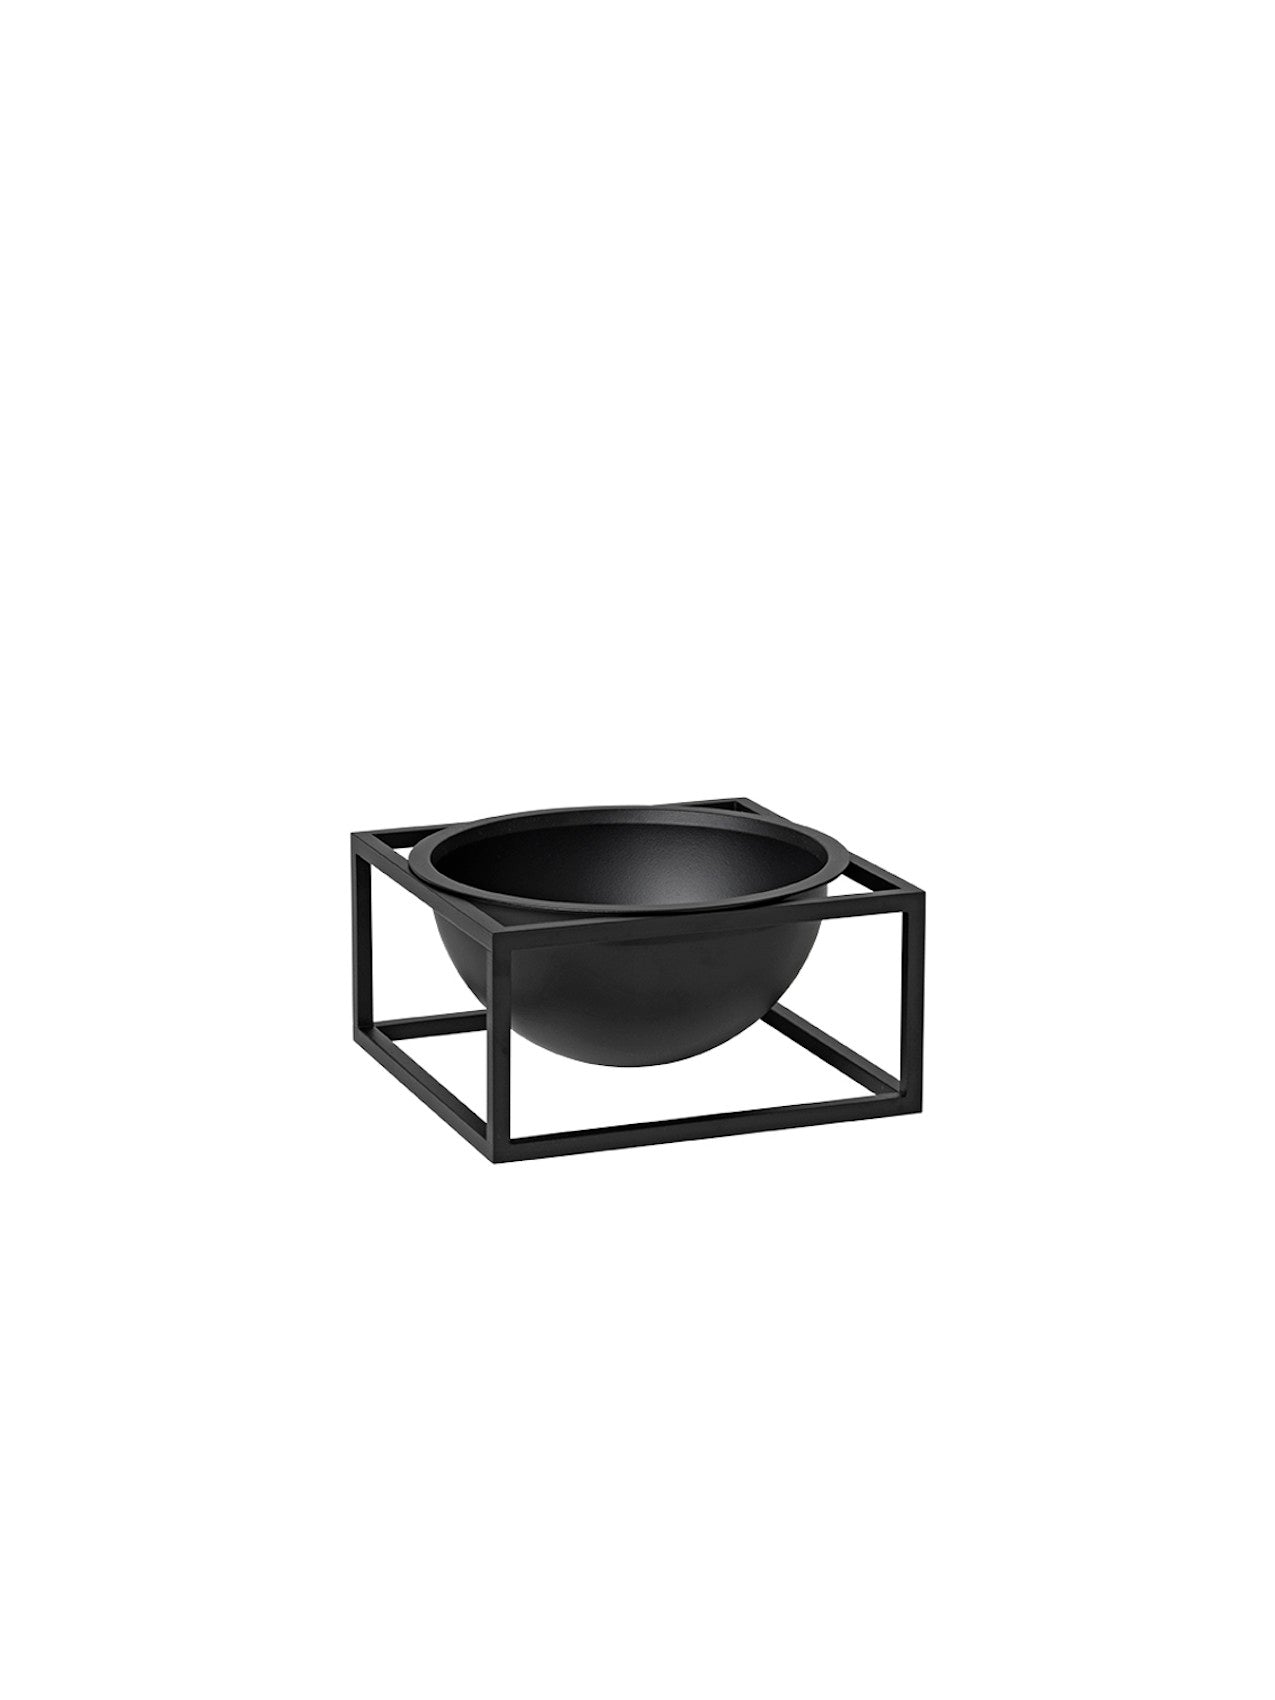 Bowl centerpiece-Decorative Bowls-MENU Design Shop